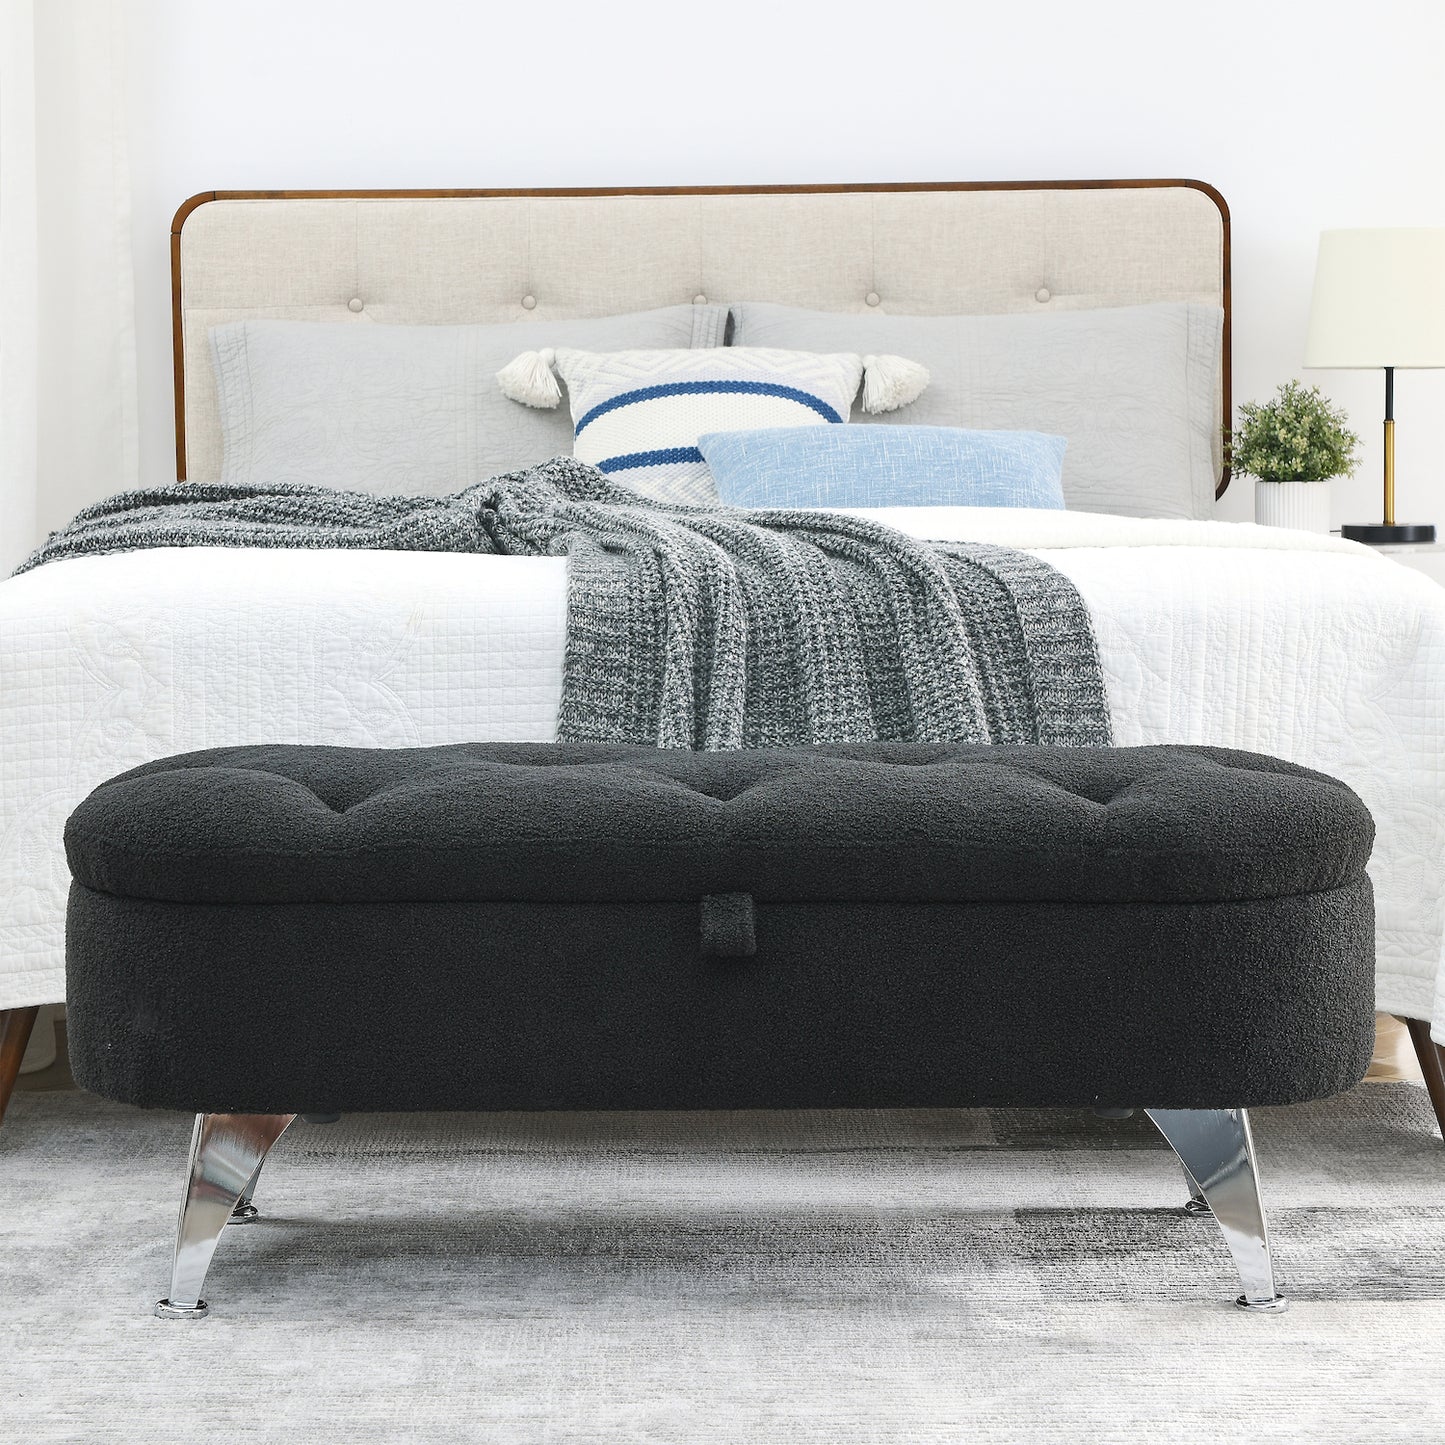 Welike 45" Teddy Fabric Upholstered Bedroom Bench - Black